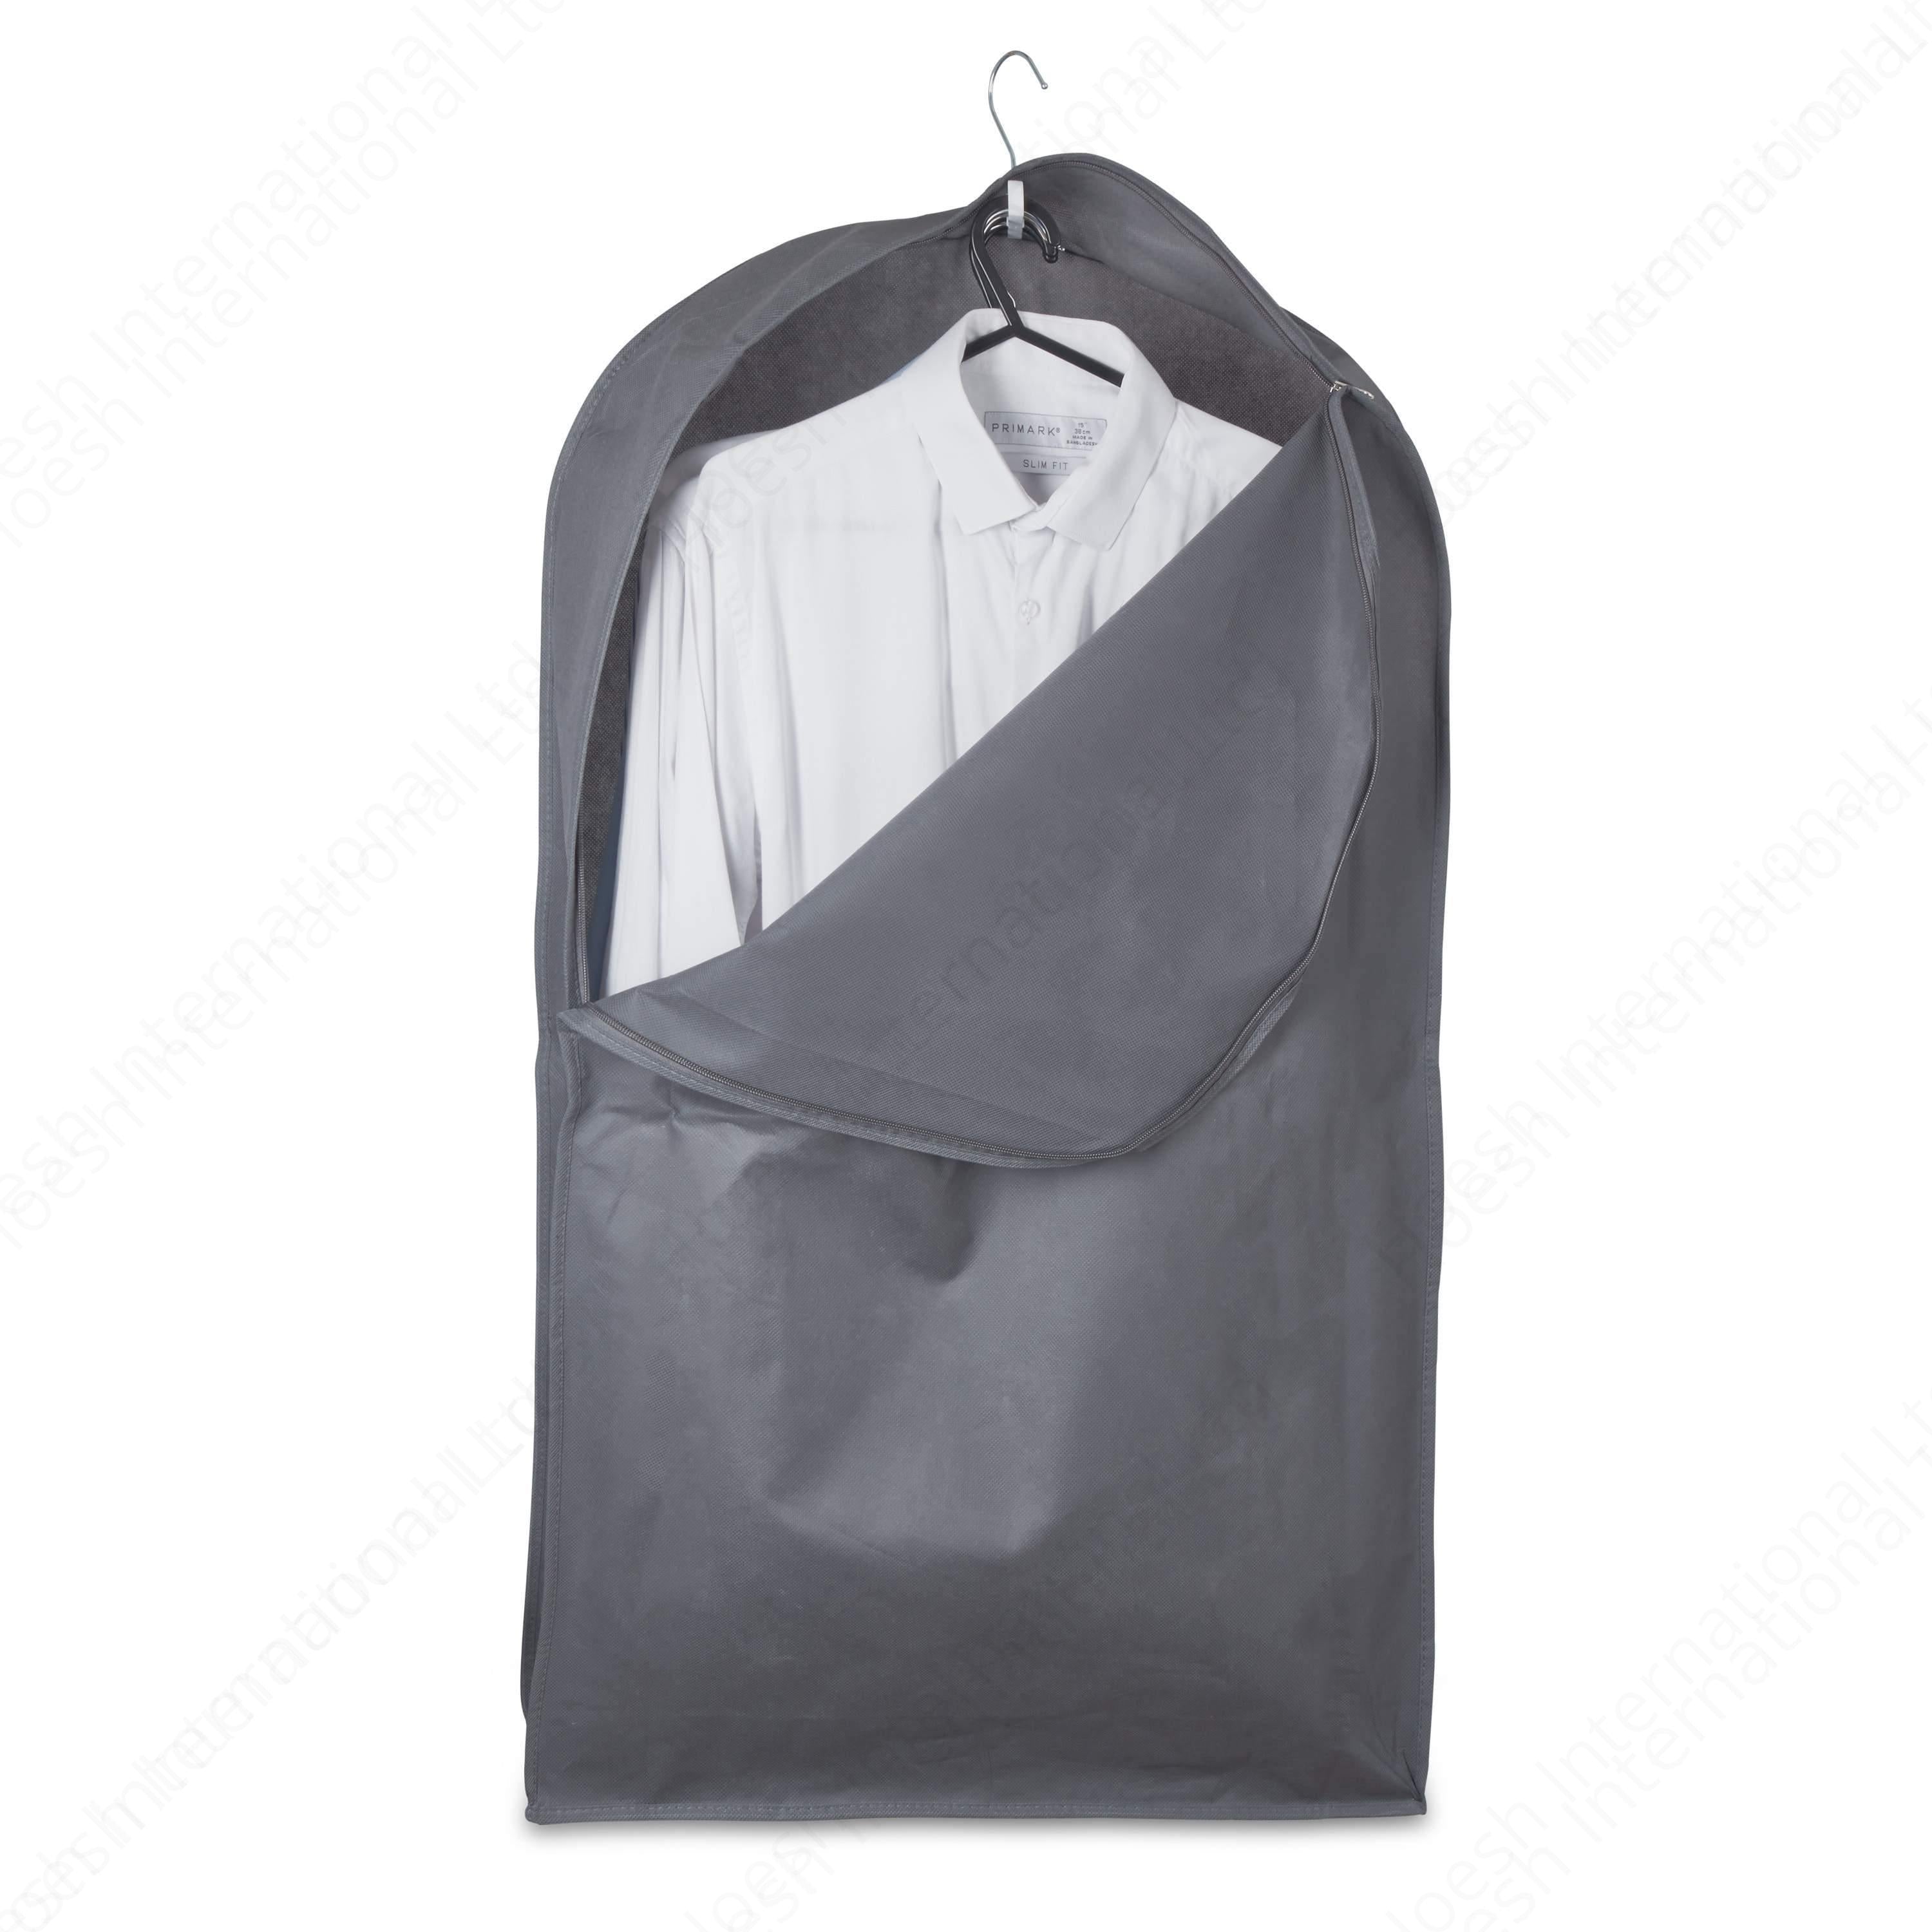 Shirt Service Bags - Hoesh International Ltd